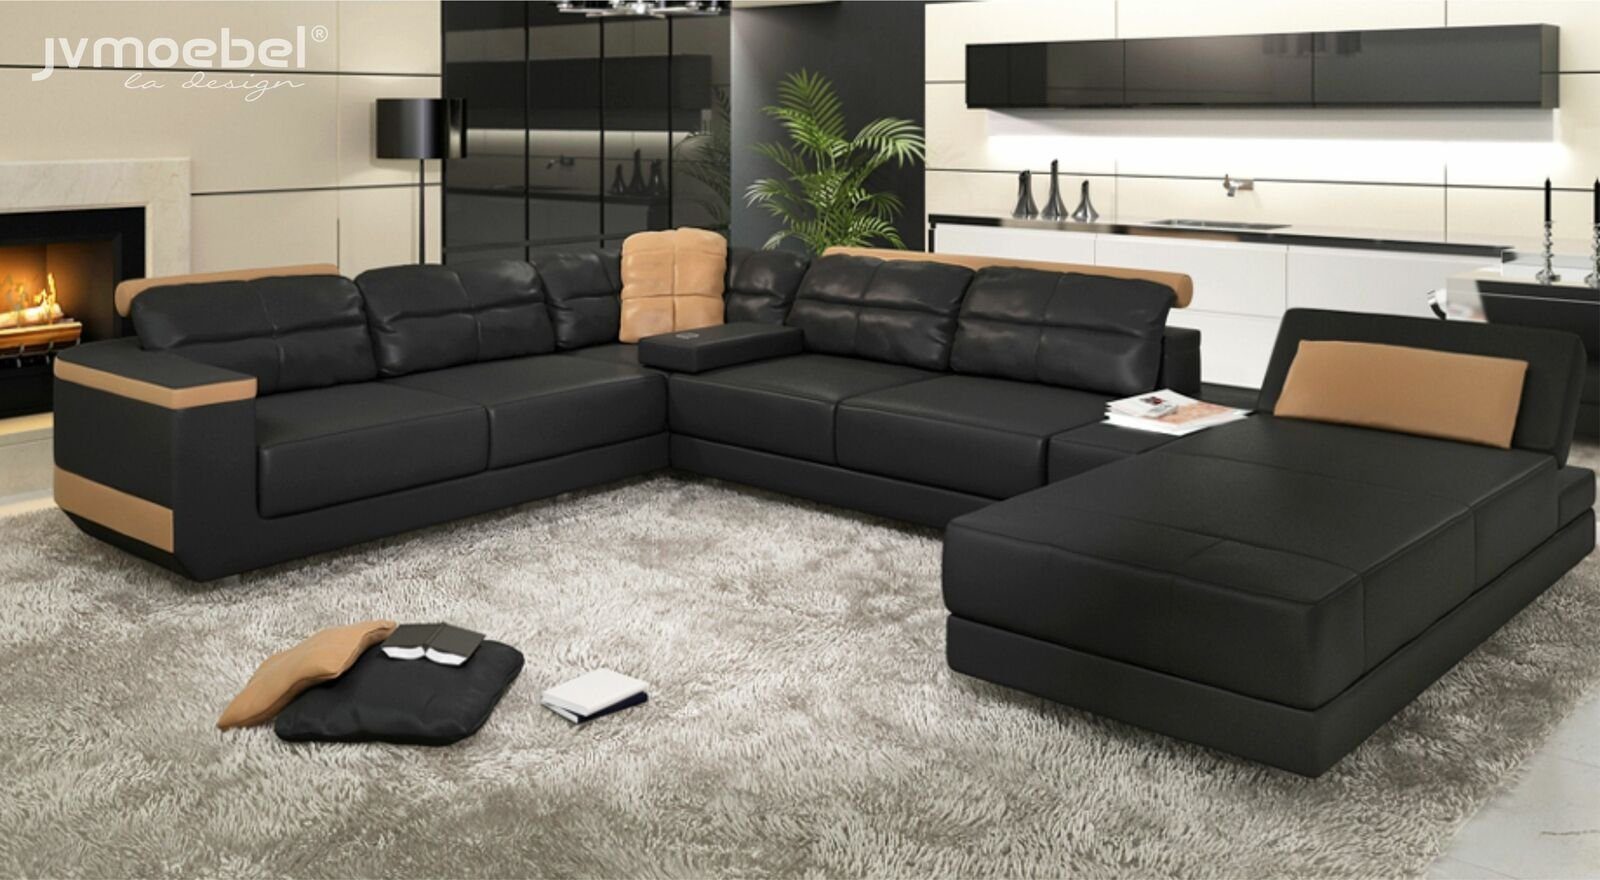 Neue Artikel treffen nacheinander ein JVmoebel Ecksofa, Modern Schwarz/Beige Polster U-Form Stoff Design Couch Sofas Ecksofa Wohnlandschaft